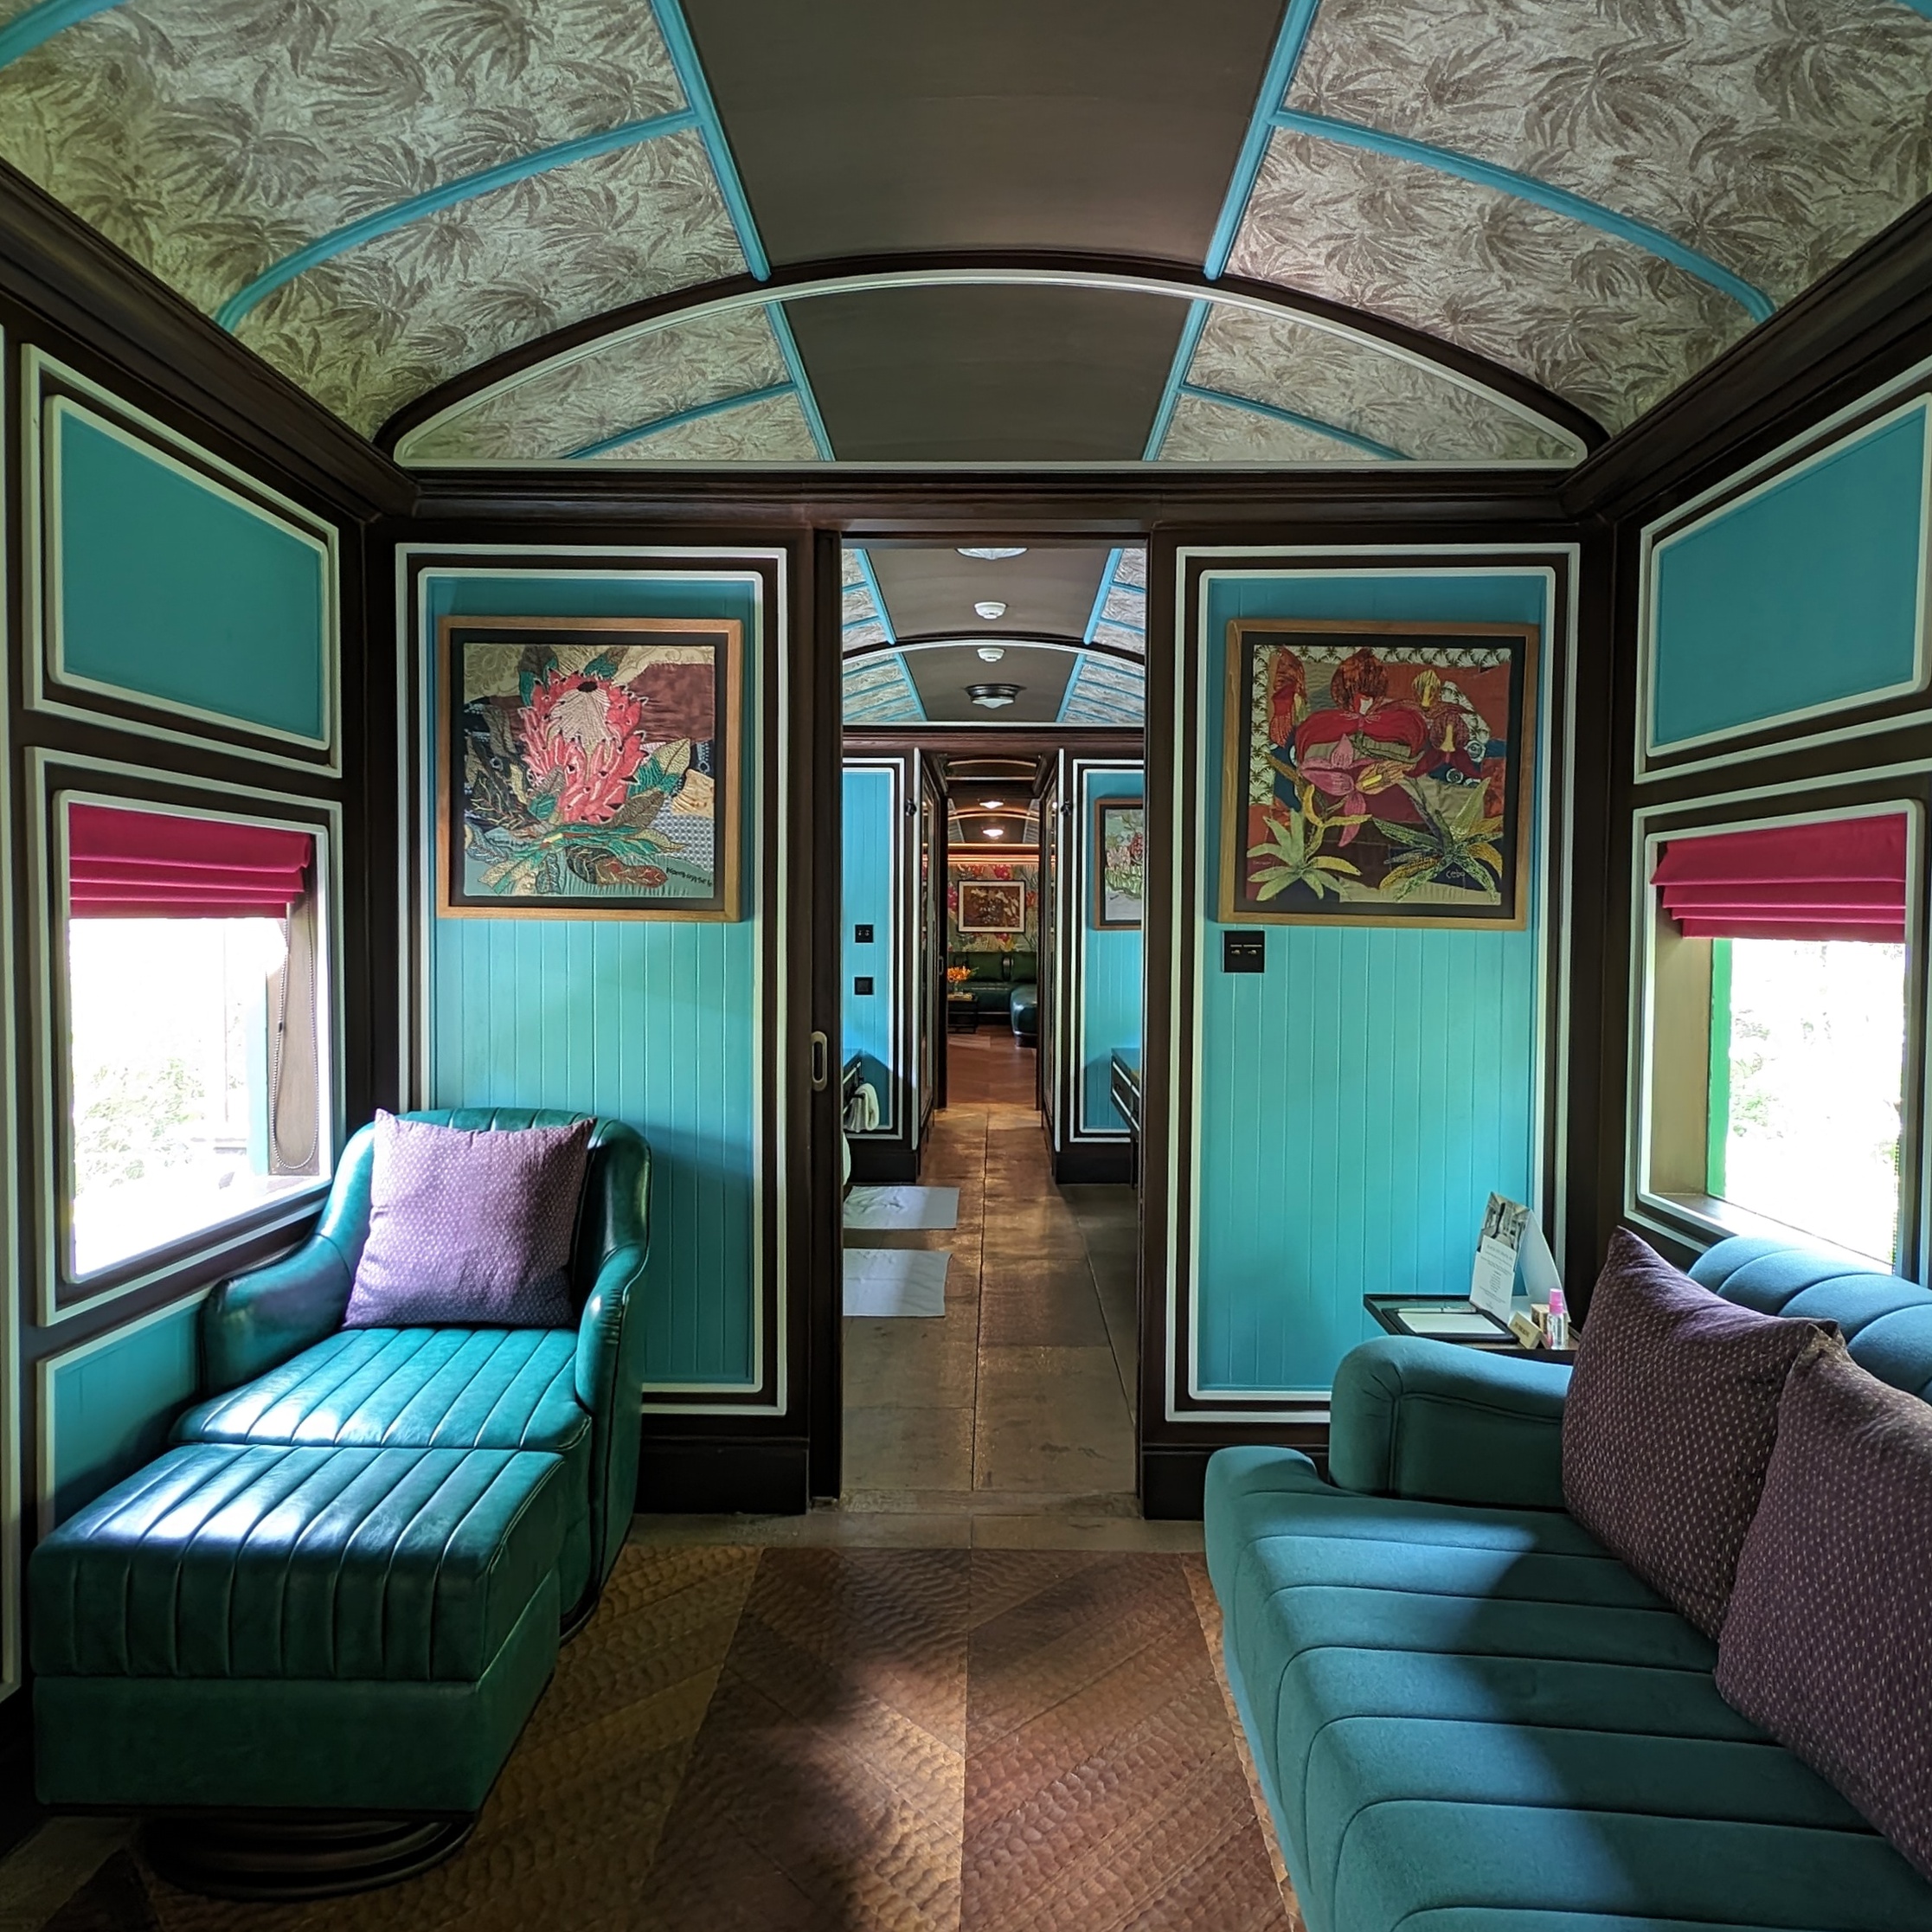 InterContinental Khao Yai Resort Heritage Railcar 1 Bedroom Villa Bedroom